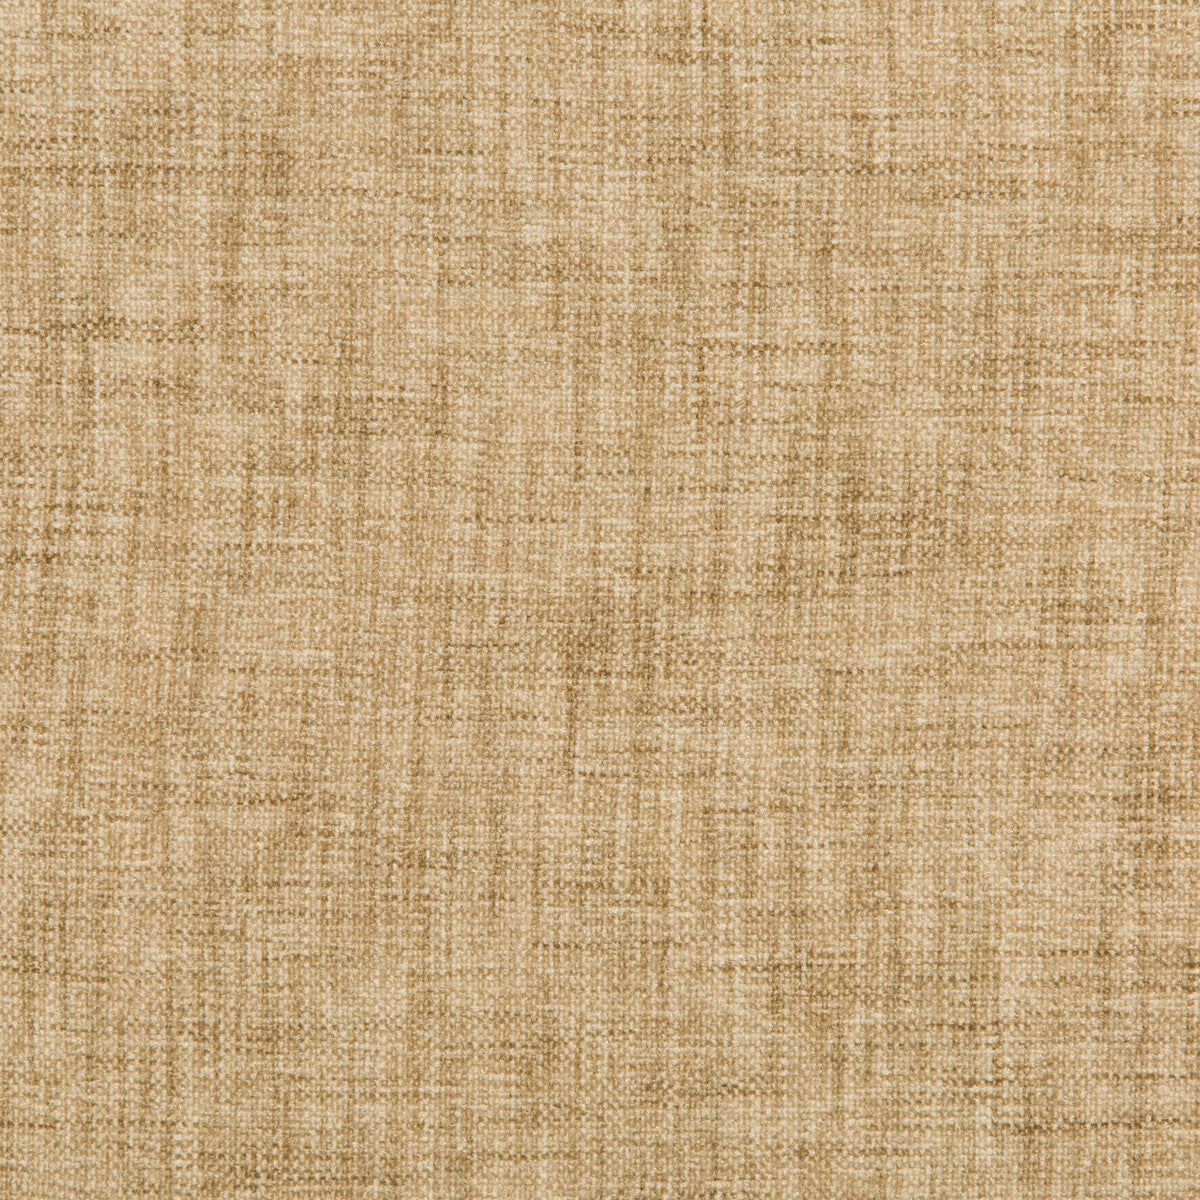 Kravet Basics fabric in 35775-16 color - pattern 35775.16.0 - by Kravet Basics